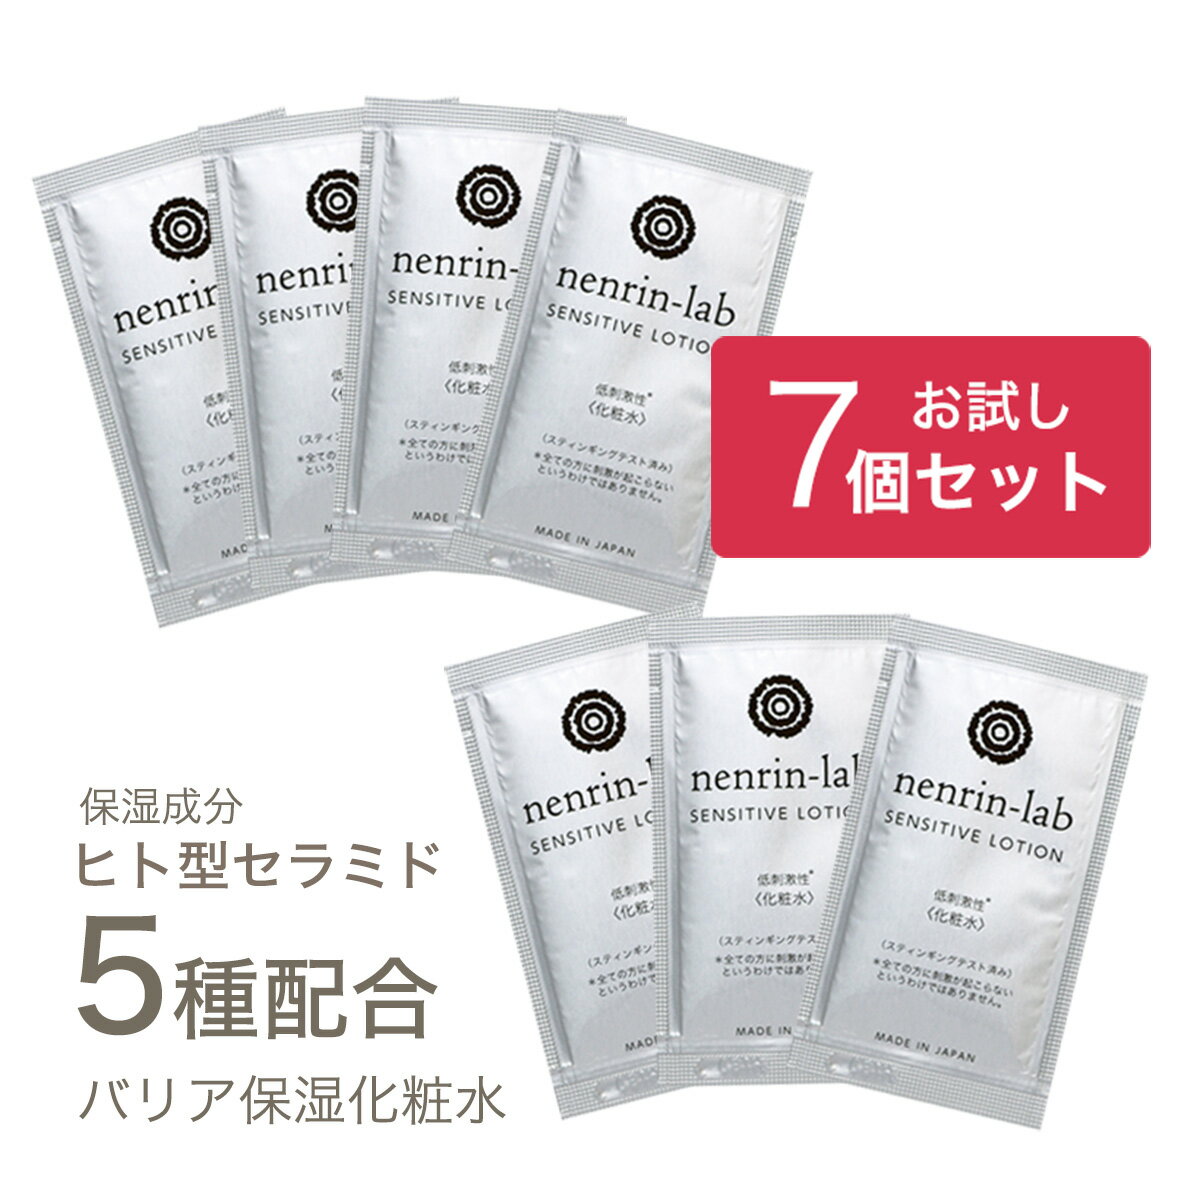 【お試し7個セット】化粧水 ヒト型セラミド 5種...の商品画像